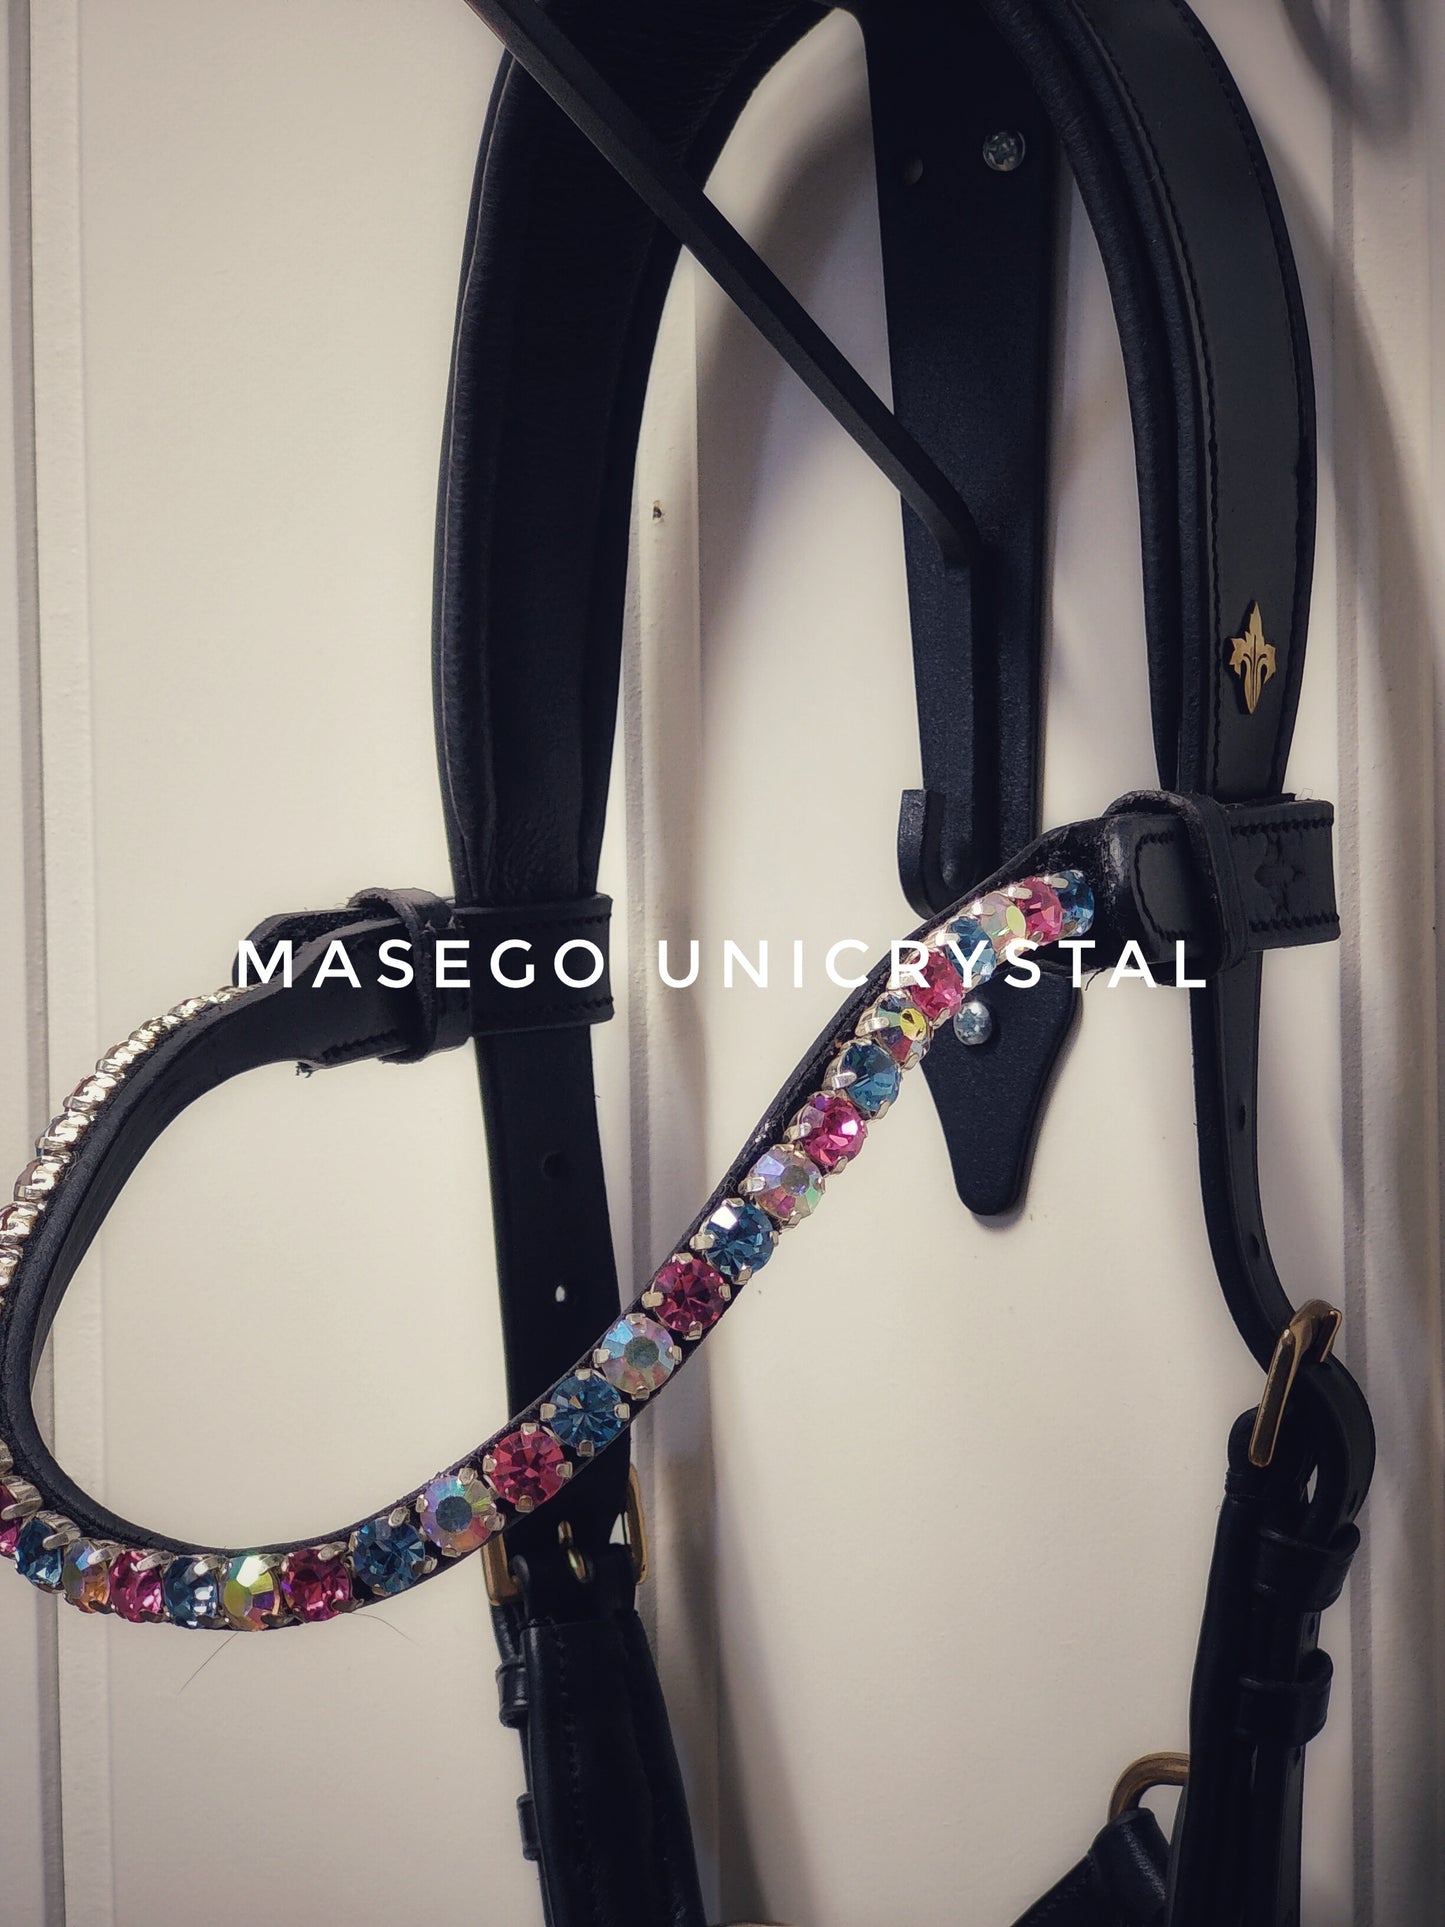 MASEGO horsewear Unicrystal browband - MASEGO horsewear